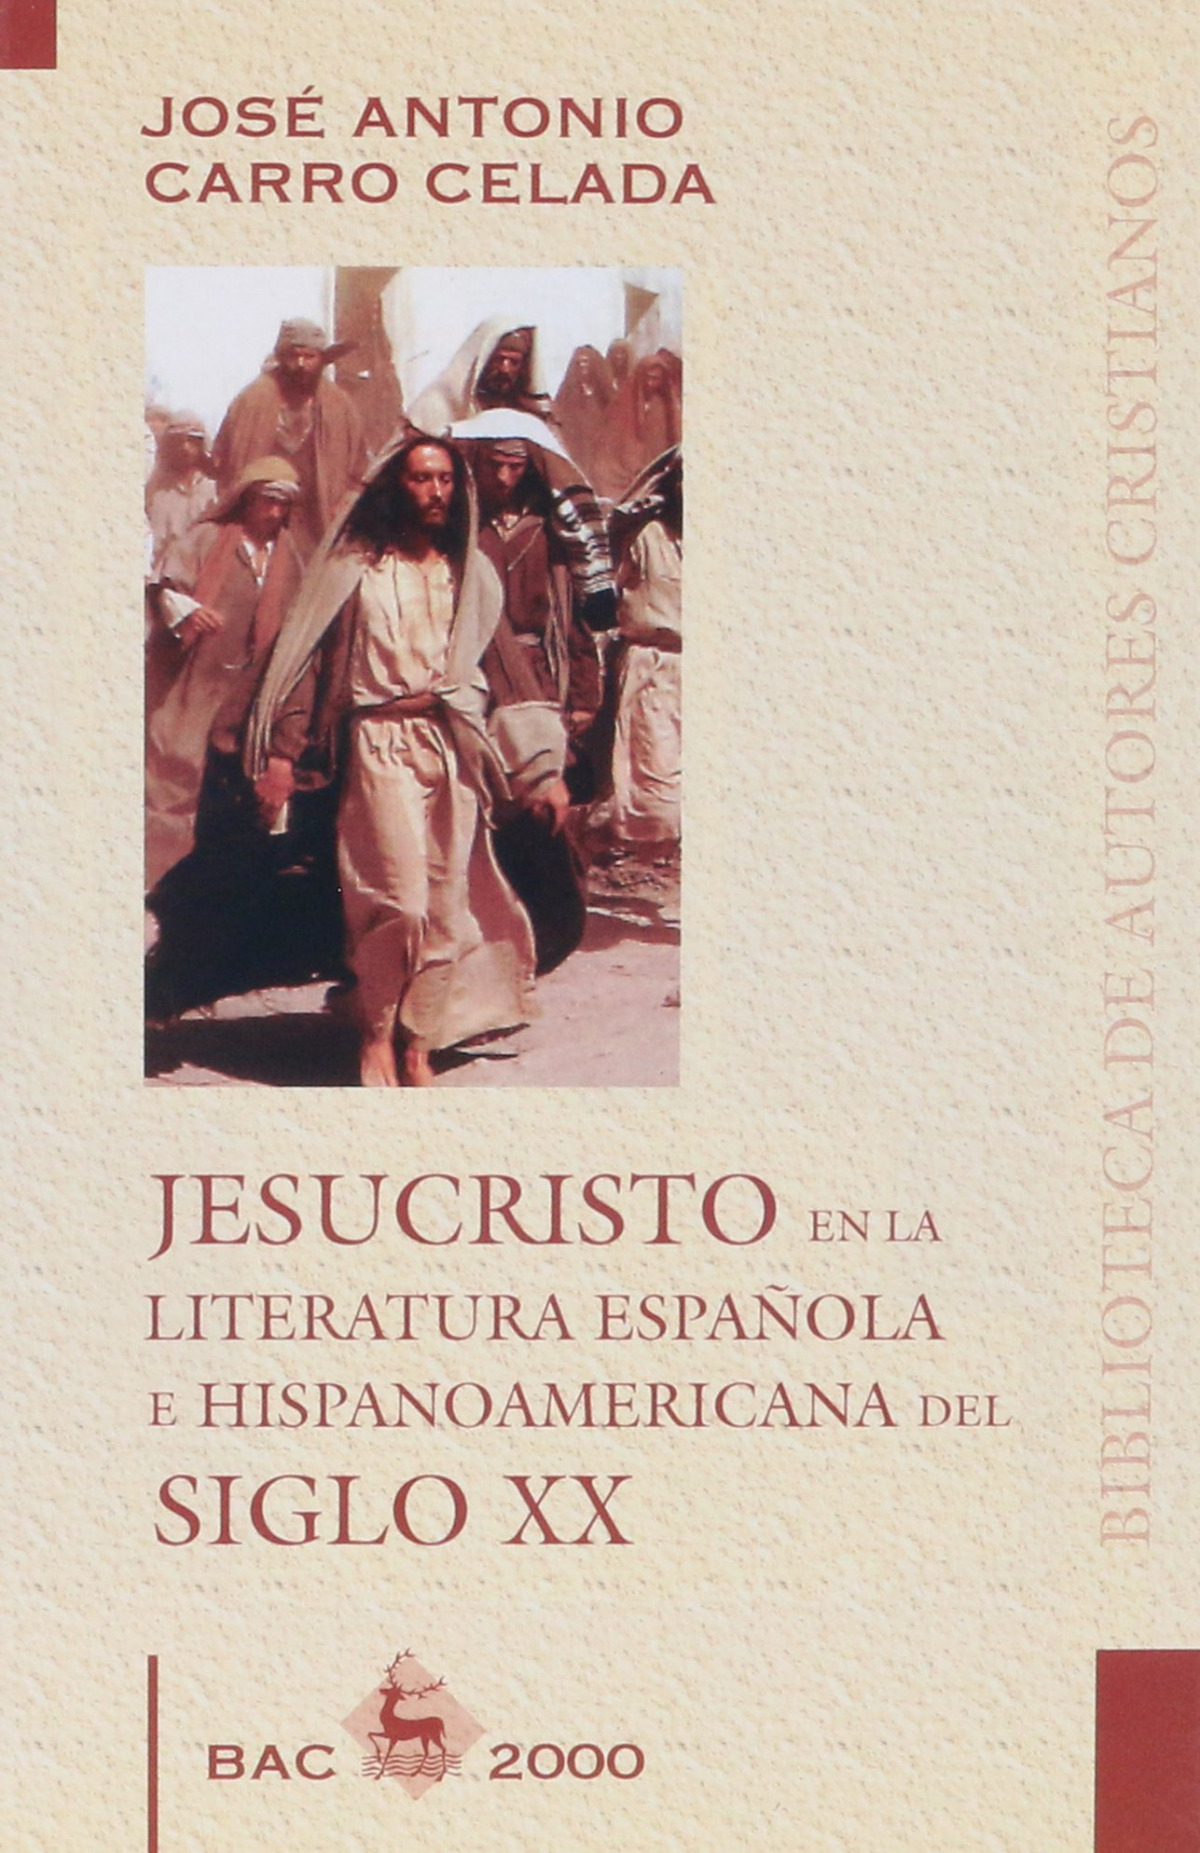 Jesucristo en la literatura española e hispanoamericana s.XX - Carro Celada, José Antonio